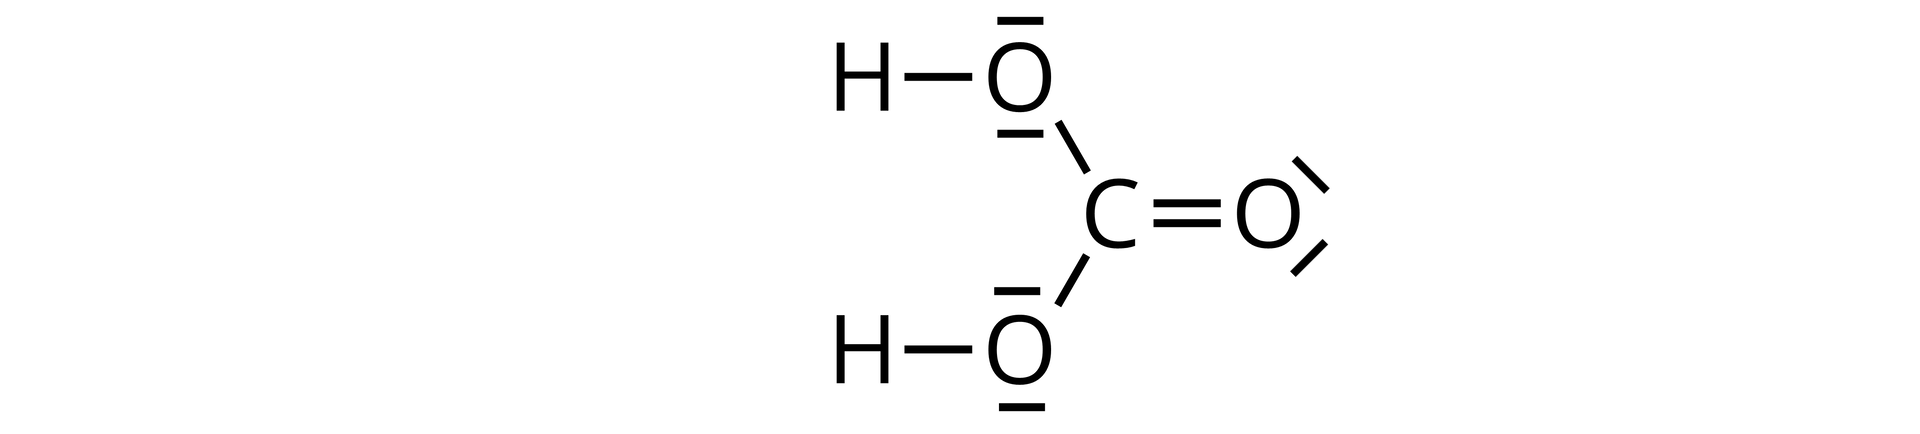 Ilustracja przedstawiająca wzór kwasu węglowego zbudowanego z atomu węgla C połączonego za pomocą wiązania podwójnego z atomem tlenu O posiadającym dwie wolne pary elektronowe. Ponadto atom węgla łączy się z dwiema grupami hydroksylowymi OH, w których to każdy z atomów tlenu posiada po dwie wolne pary elektronowe.